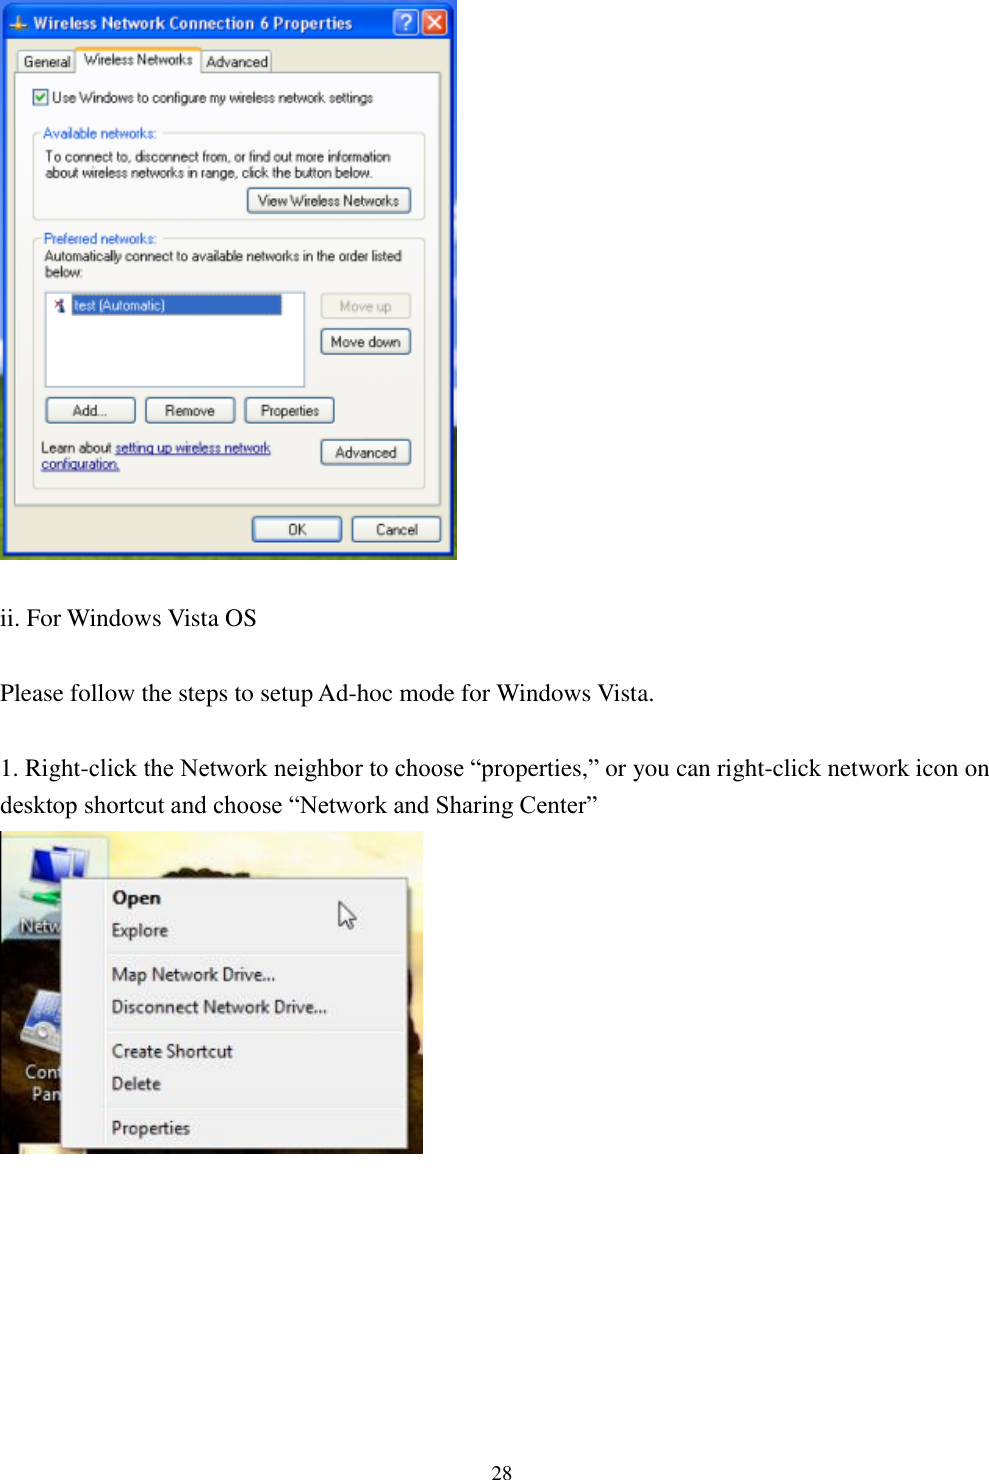 [鍵入文字]  28    ii. For Windows Vista OS  Please follow the steps to setup Ad-hoc mode for Windows Vista.  1. Right-click the Network neighbor to choose “properties,” or you can right-click network icon on desktop shortcut and choose “Network and Sharing Center”   